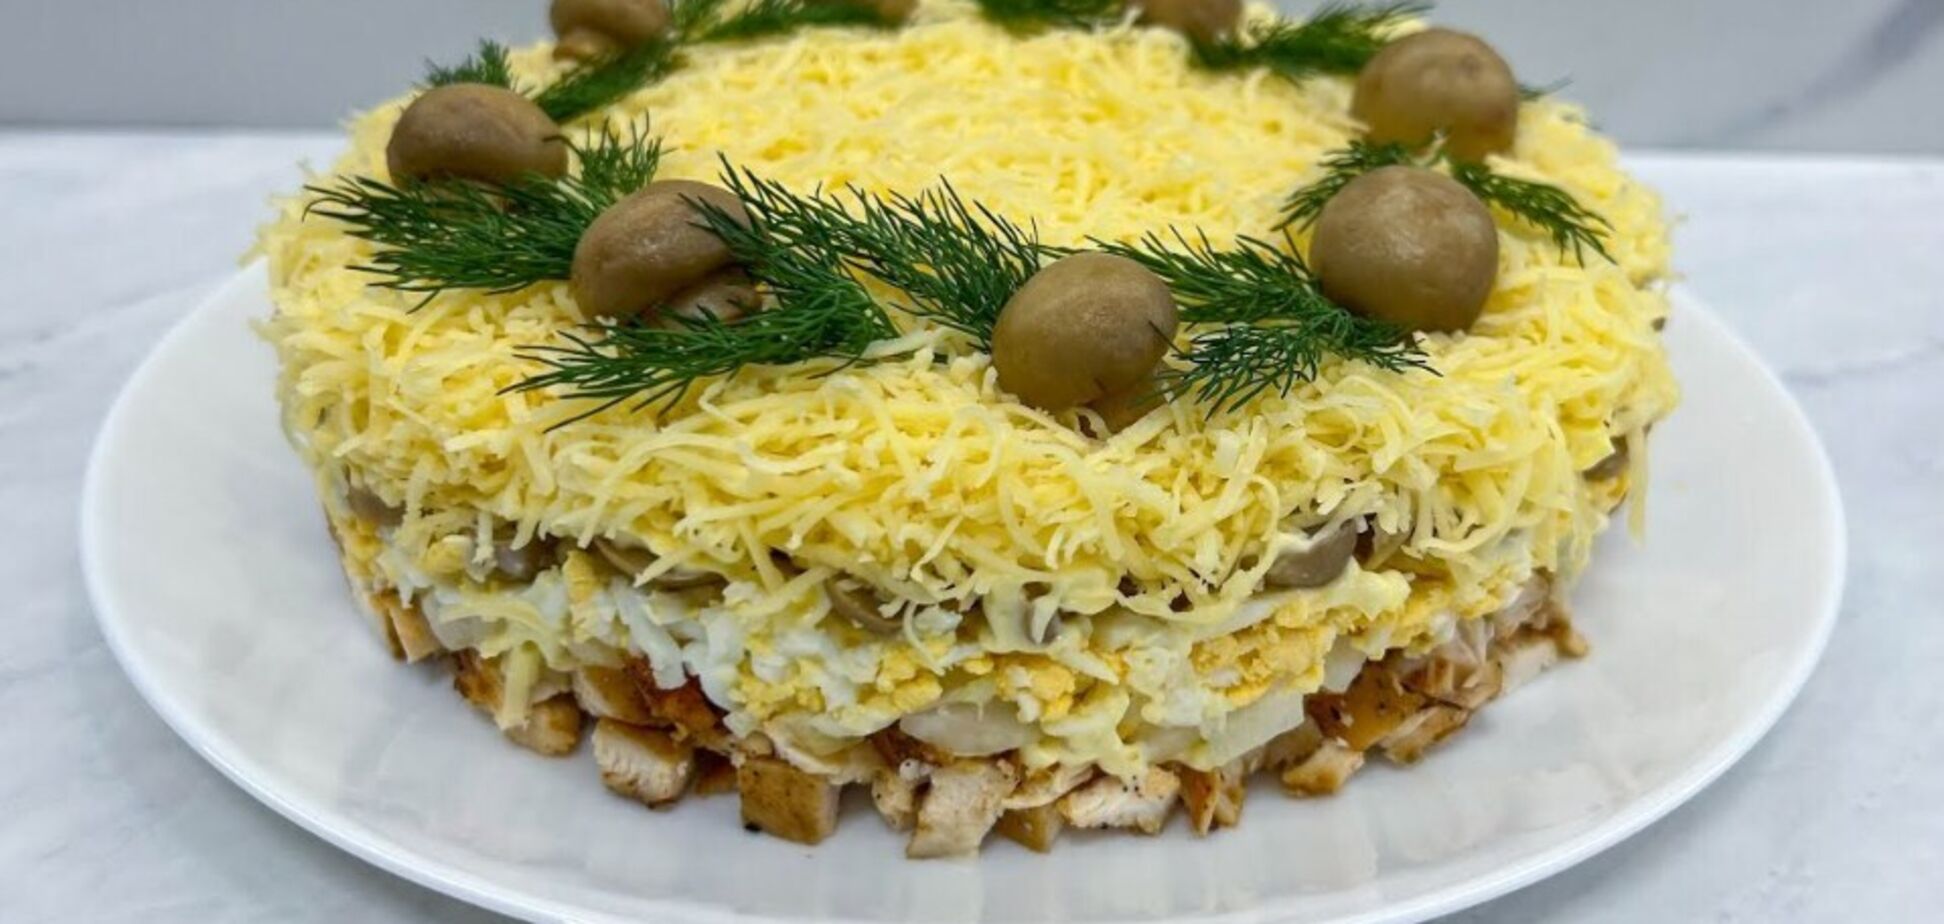 Ефектний святковий салат 'Грибна галявина': смачніший за 'Мімозу'